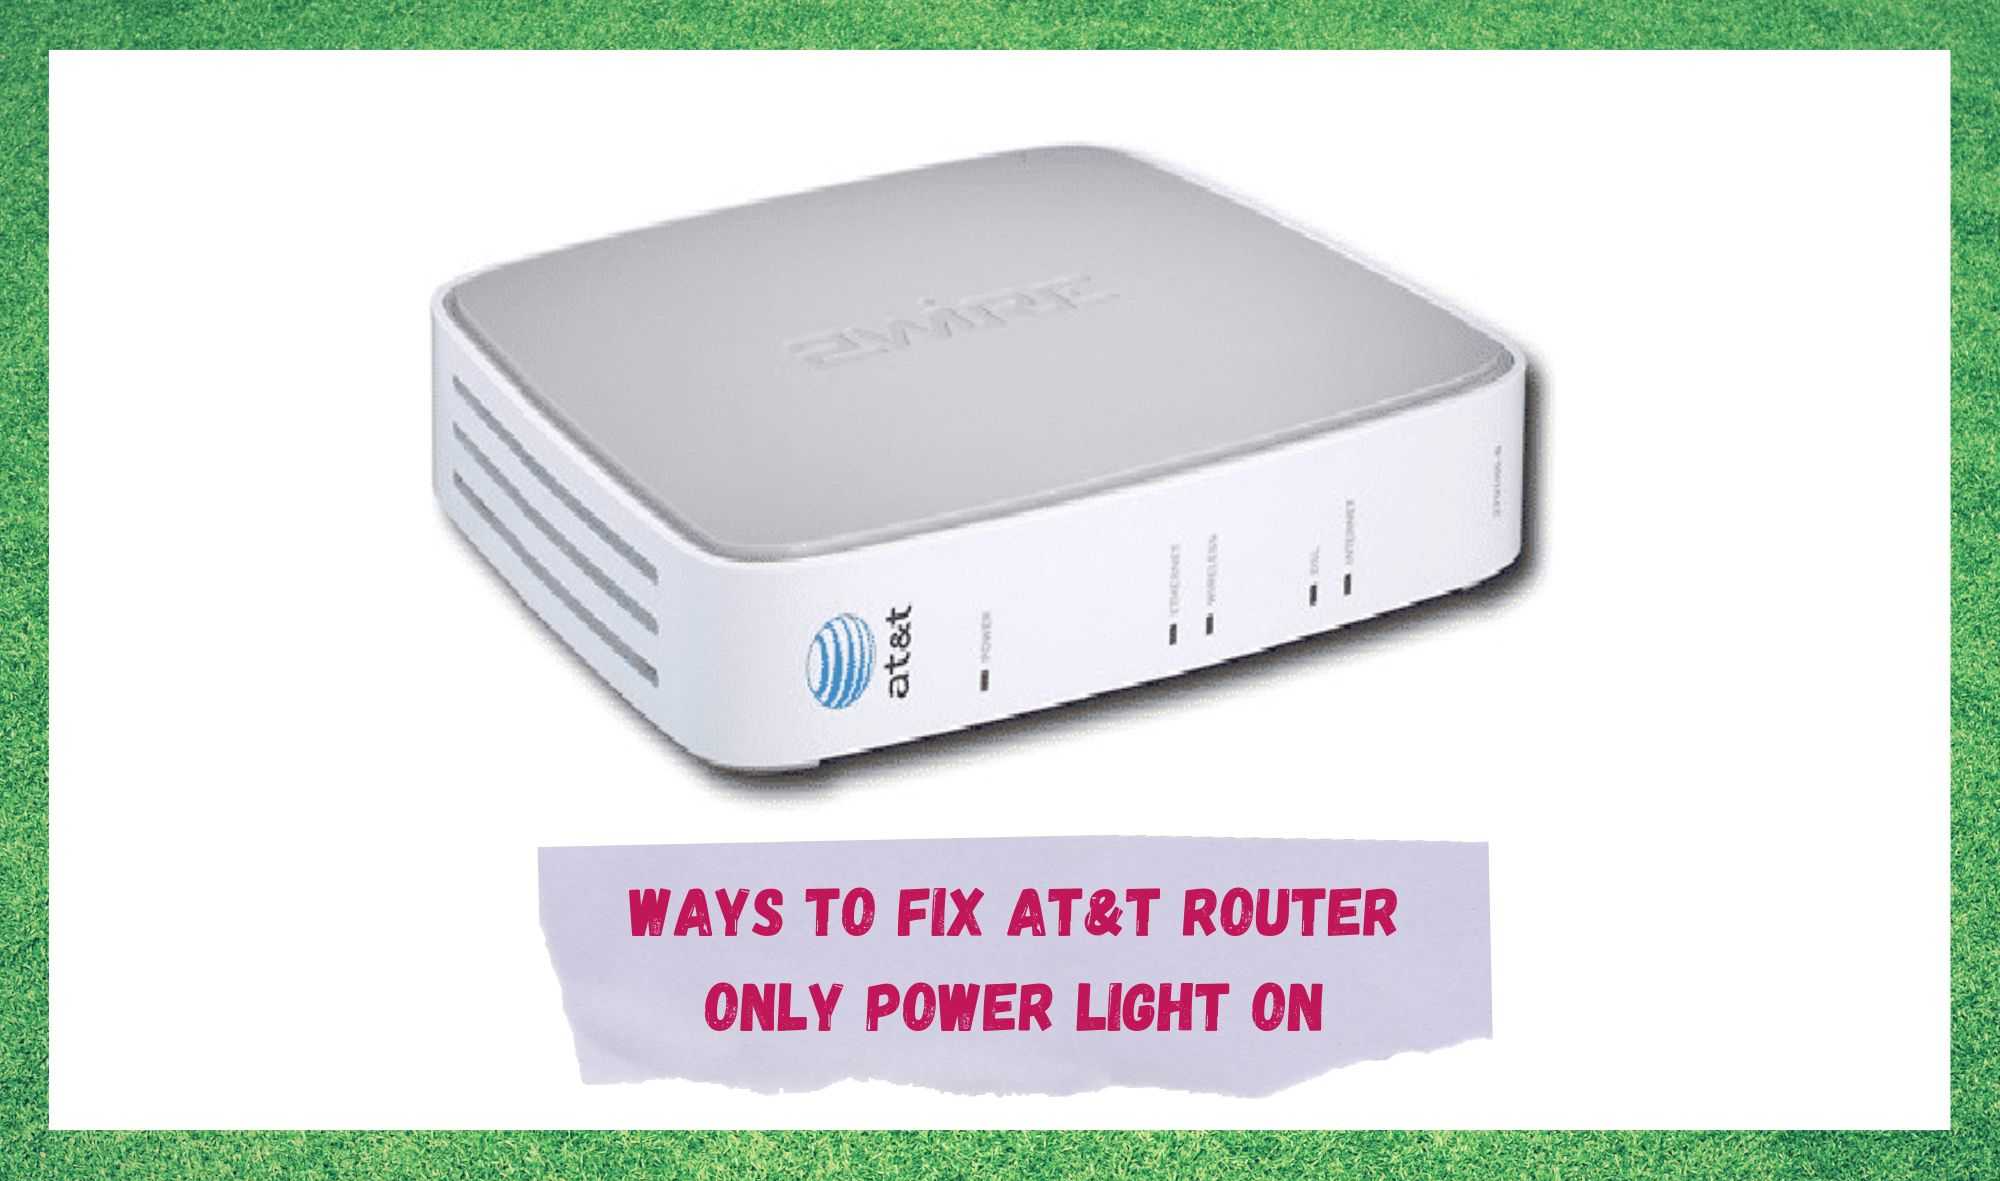 att router only power light on